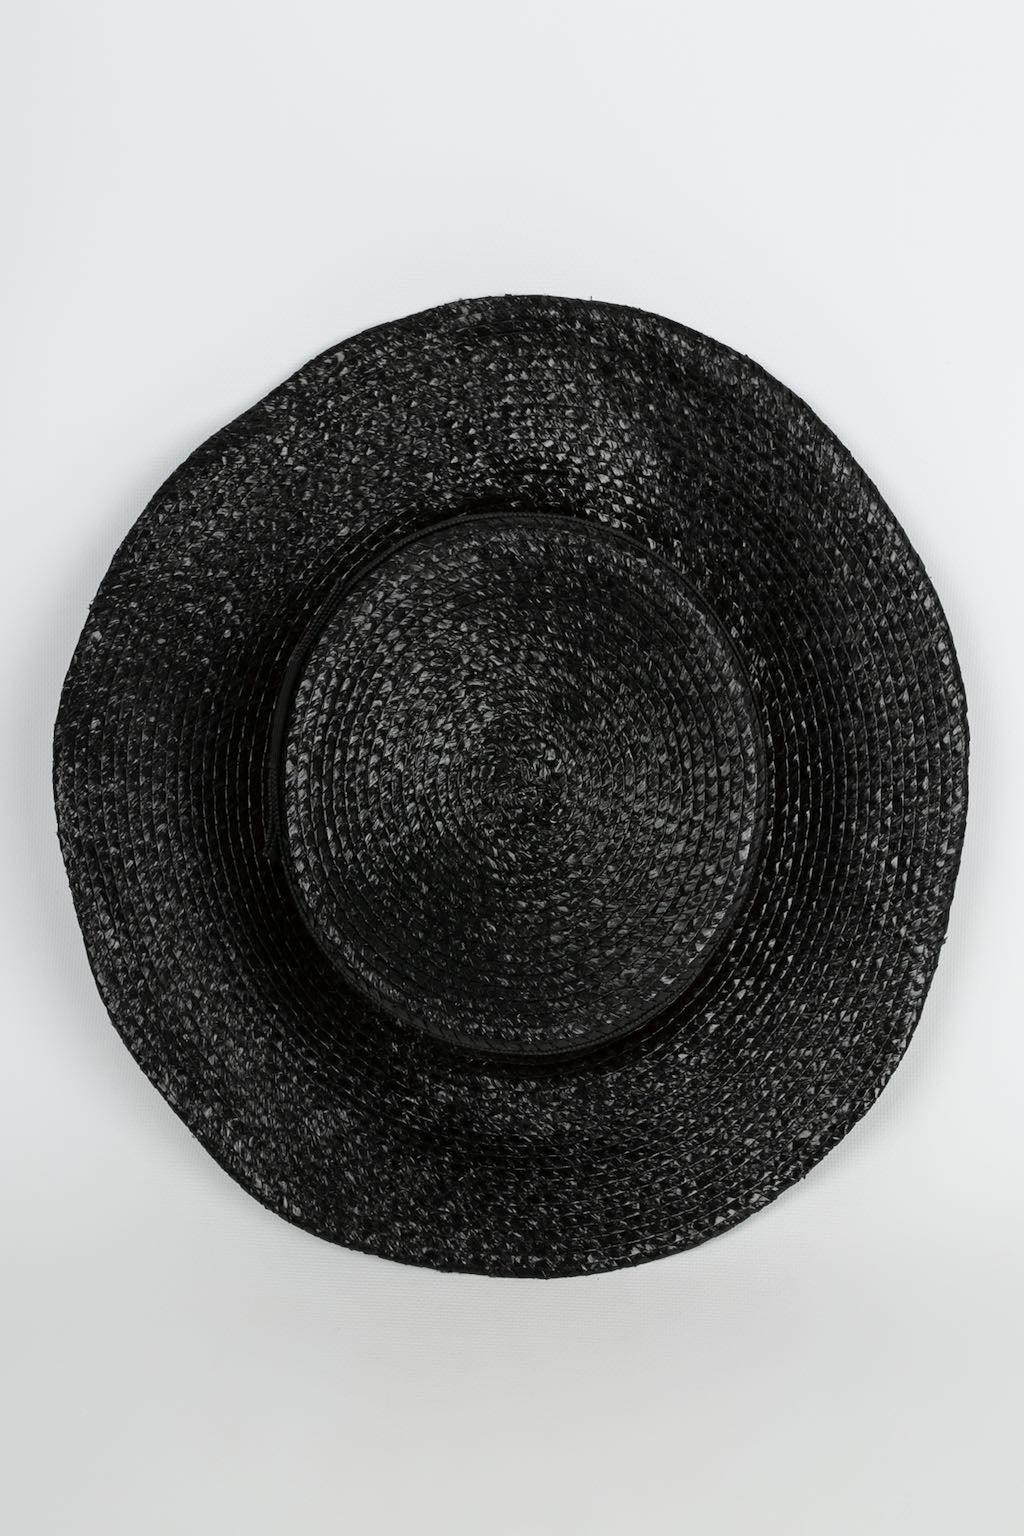 Yves Saint Laurent Sht with Braid Trim Hat For Sale 1